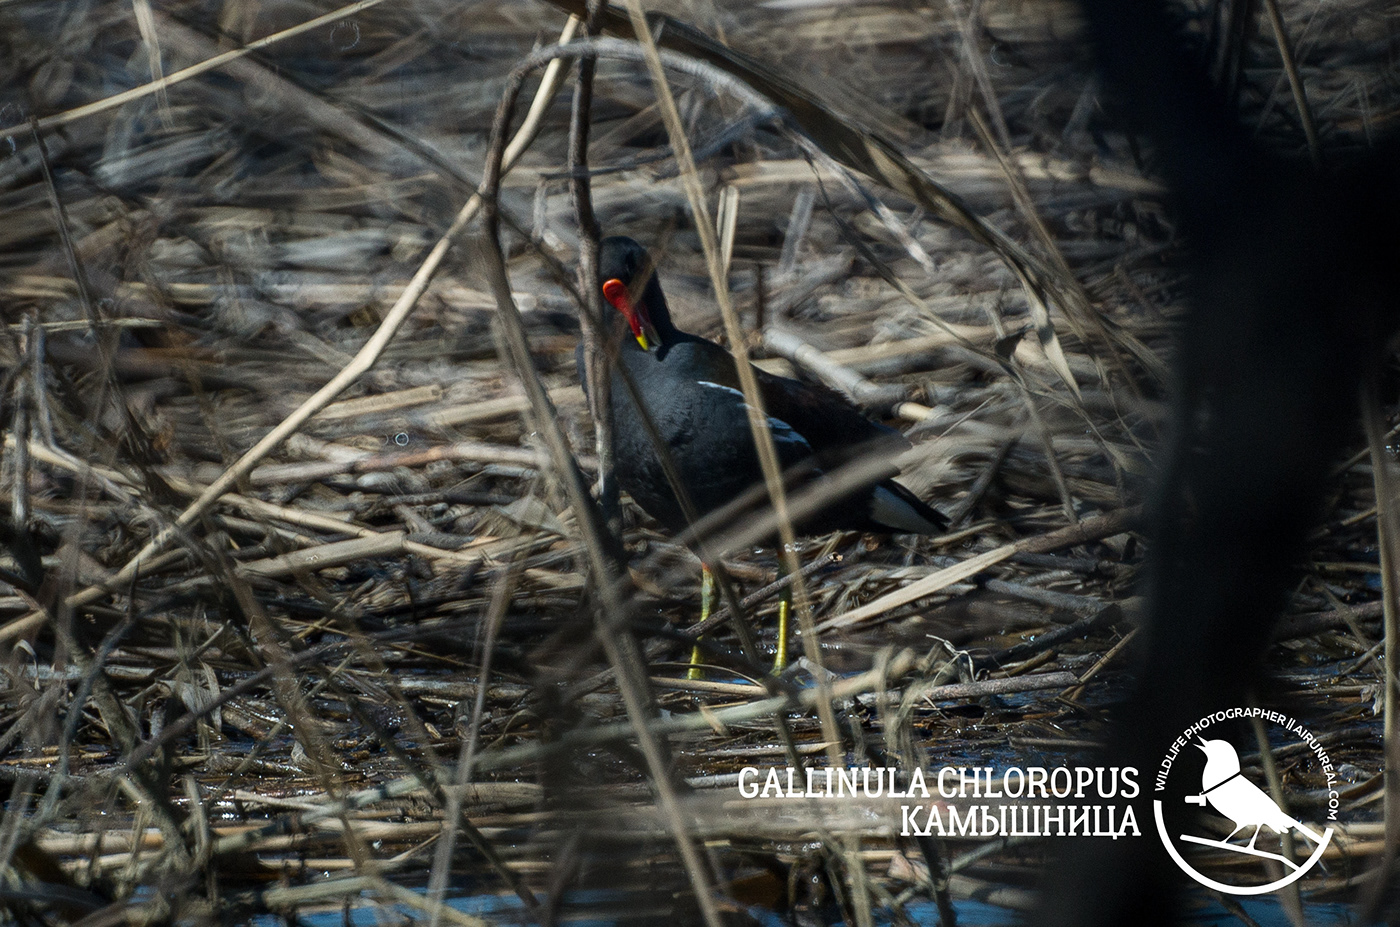 Сommon moorhen waterhen swamp chicken Gallinula chloropus bird birds birdswatching volgograd Russia wildlife